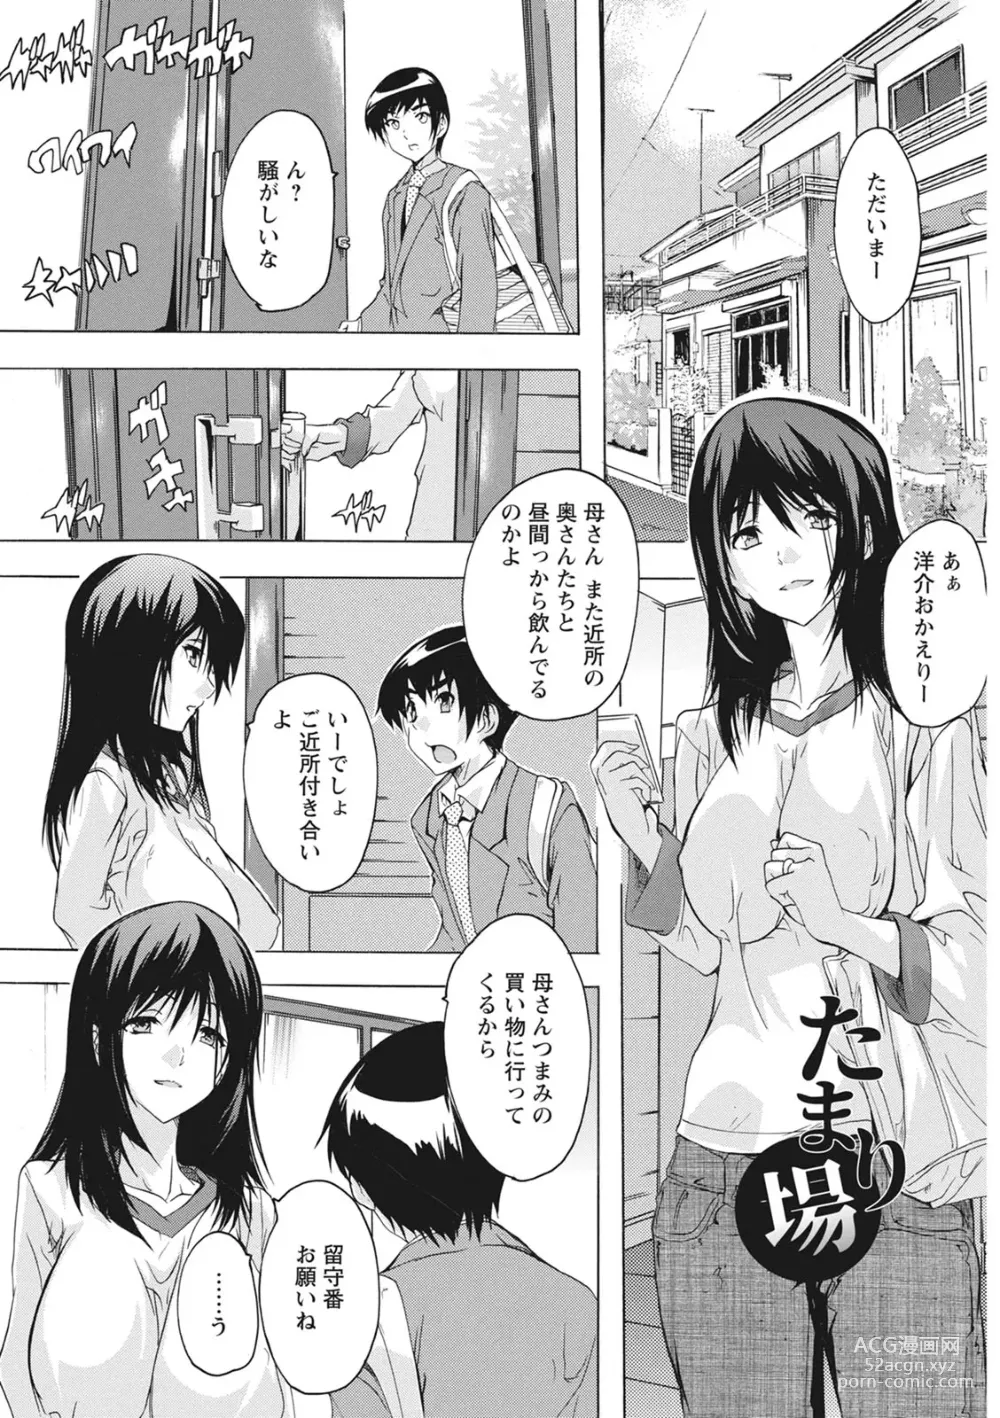 Page 5 of manga Haramase no Heya - Room to the pregnant